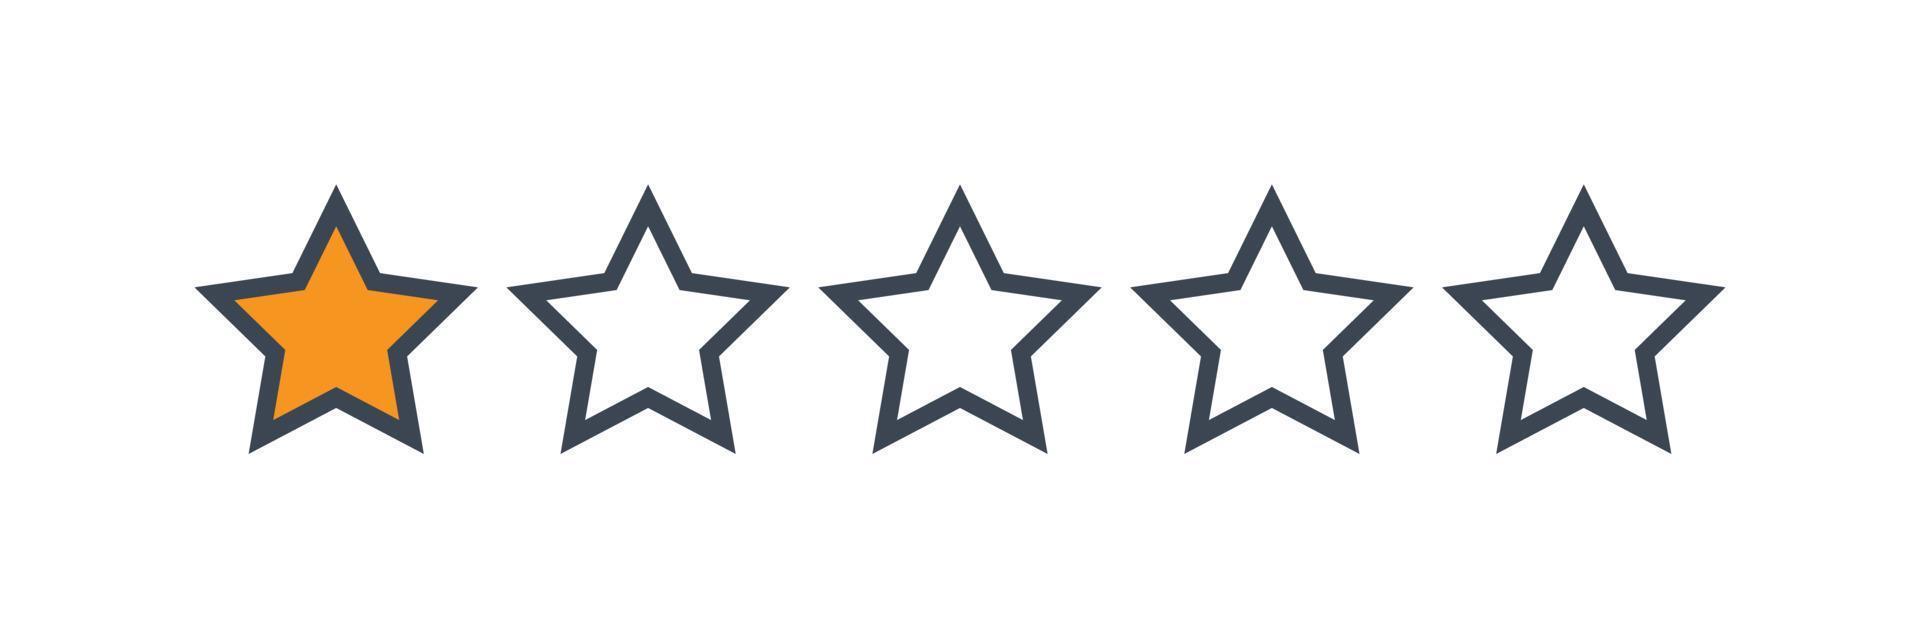 recensione della valutazione del prodotto del cliente a una stella vettore